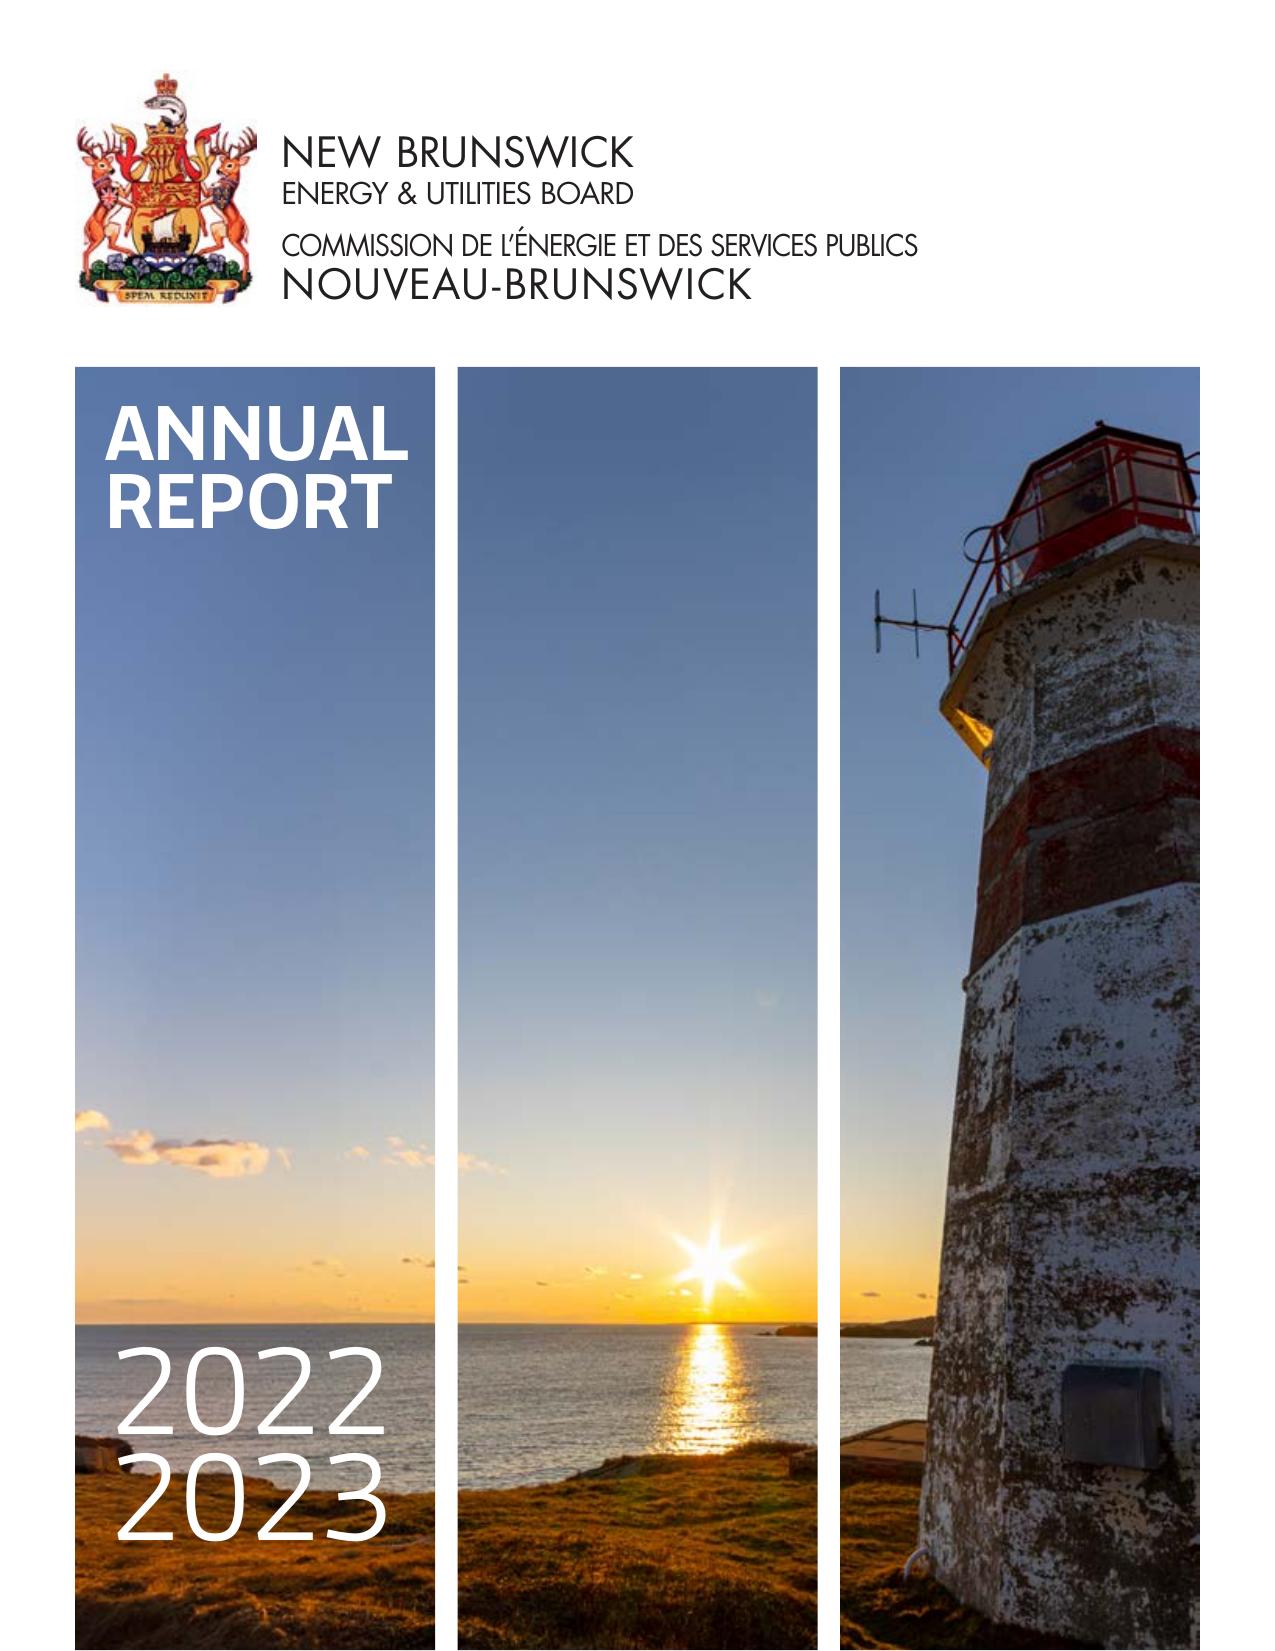 NBEUB 2023 Annual Report